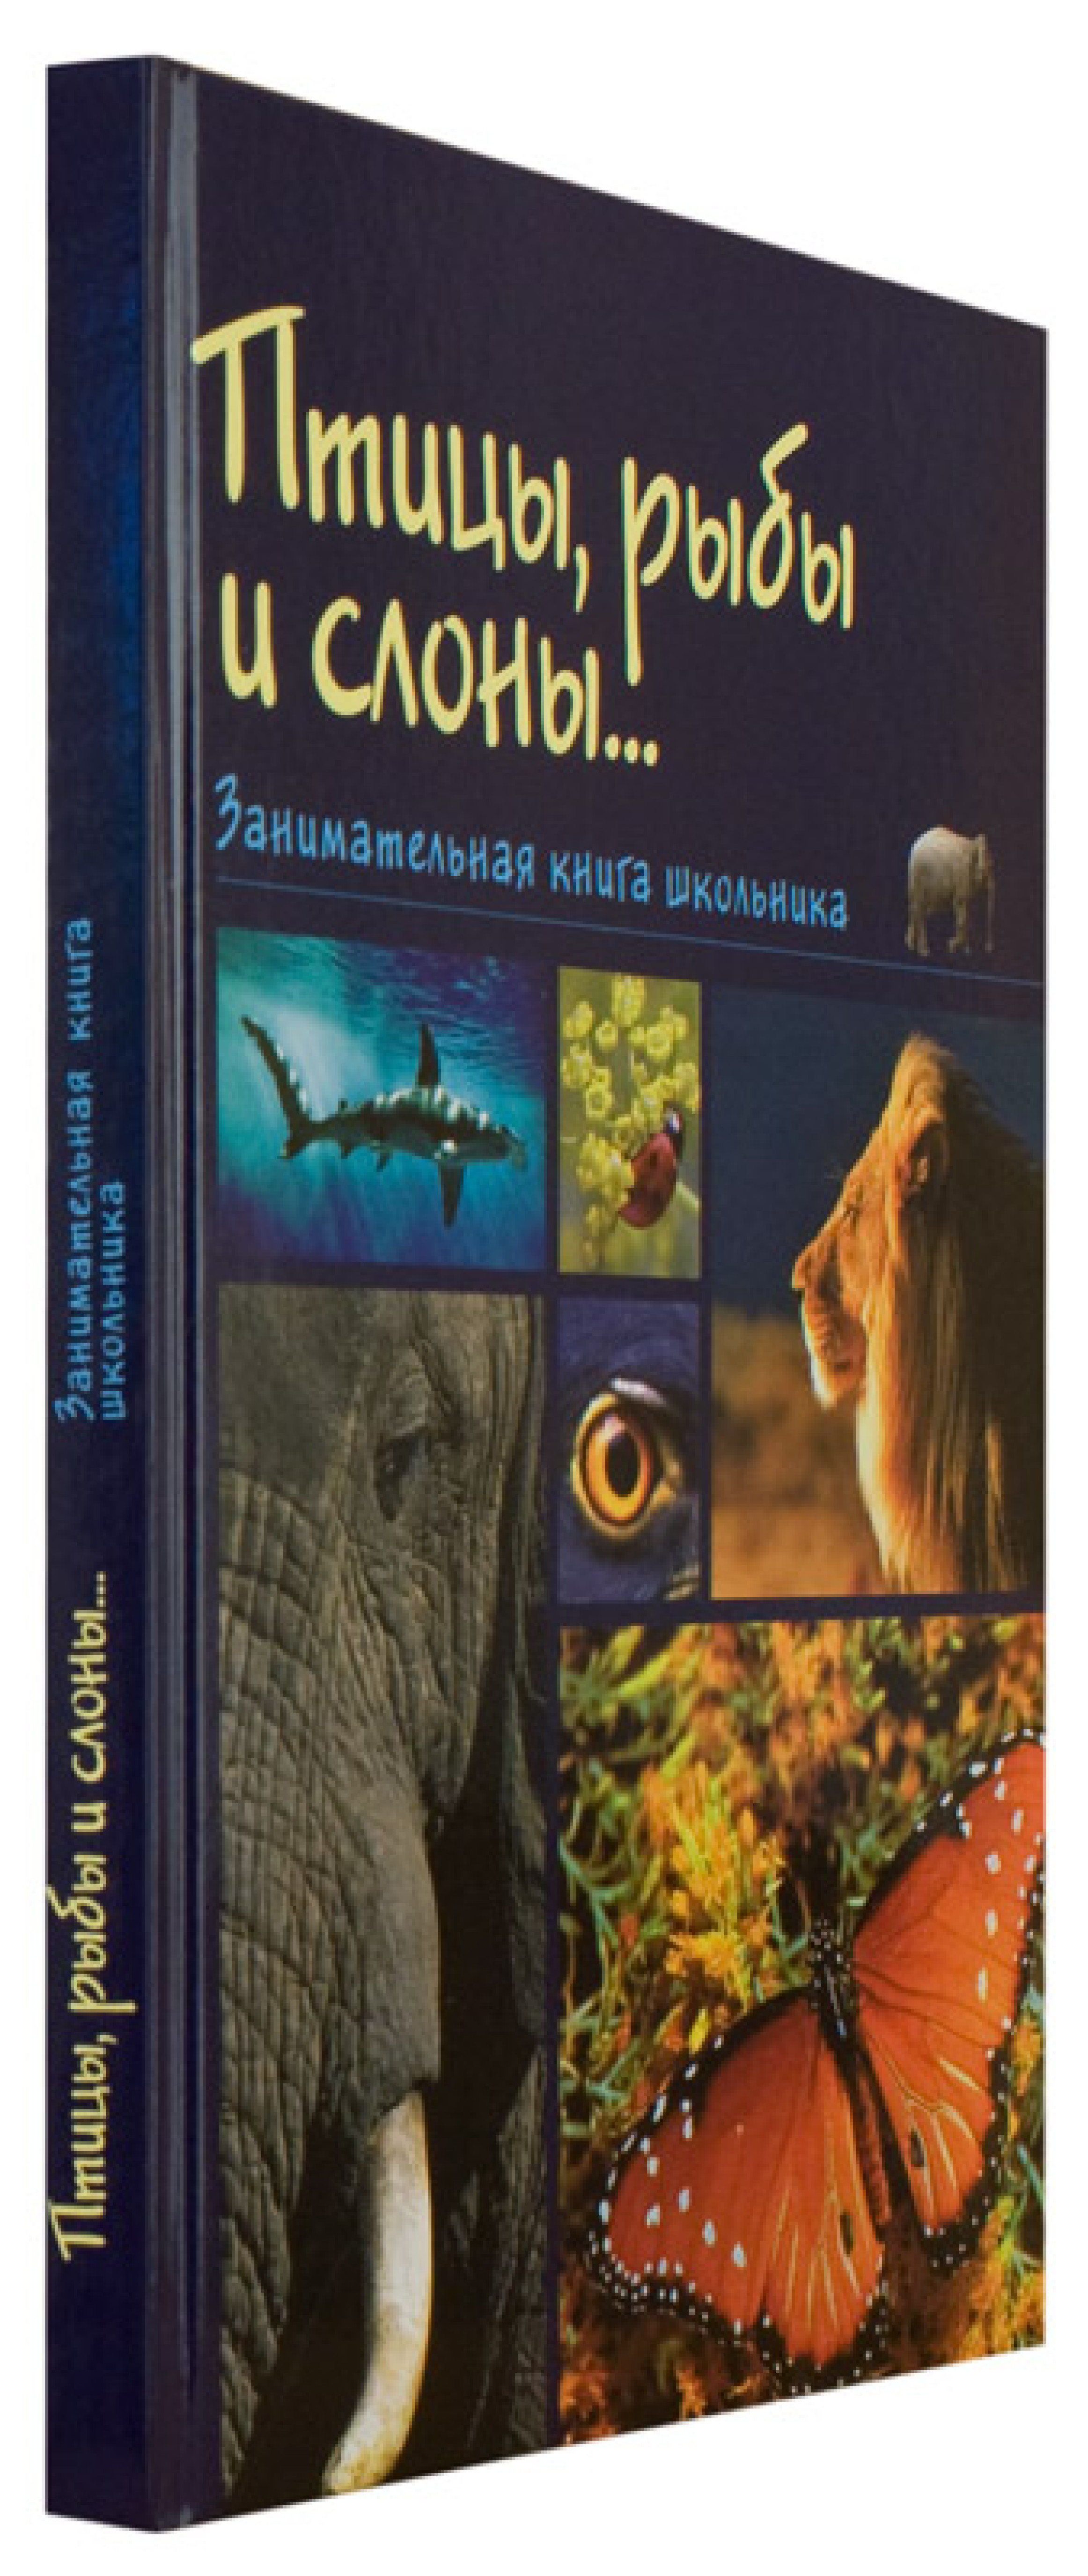 Птицы, рыбы и слоны... Занимательная книга школьника - фото2